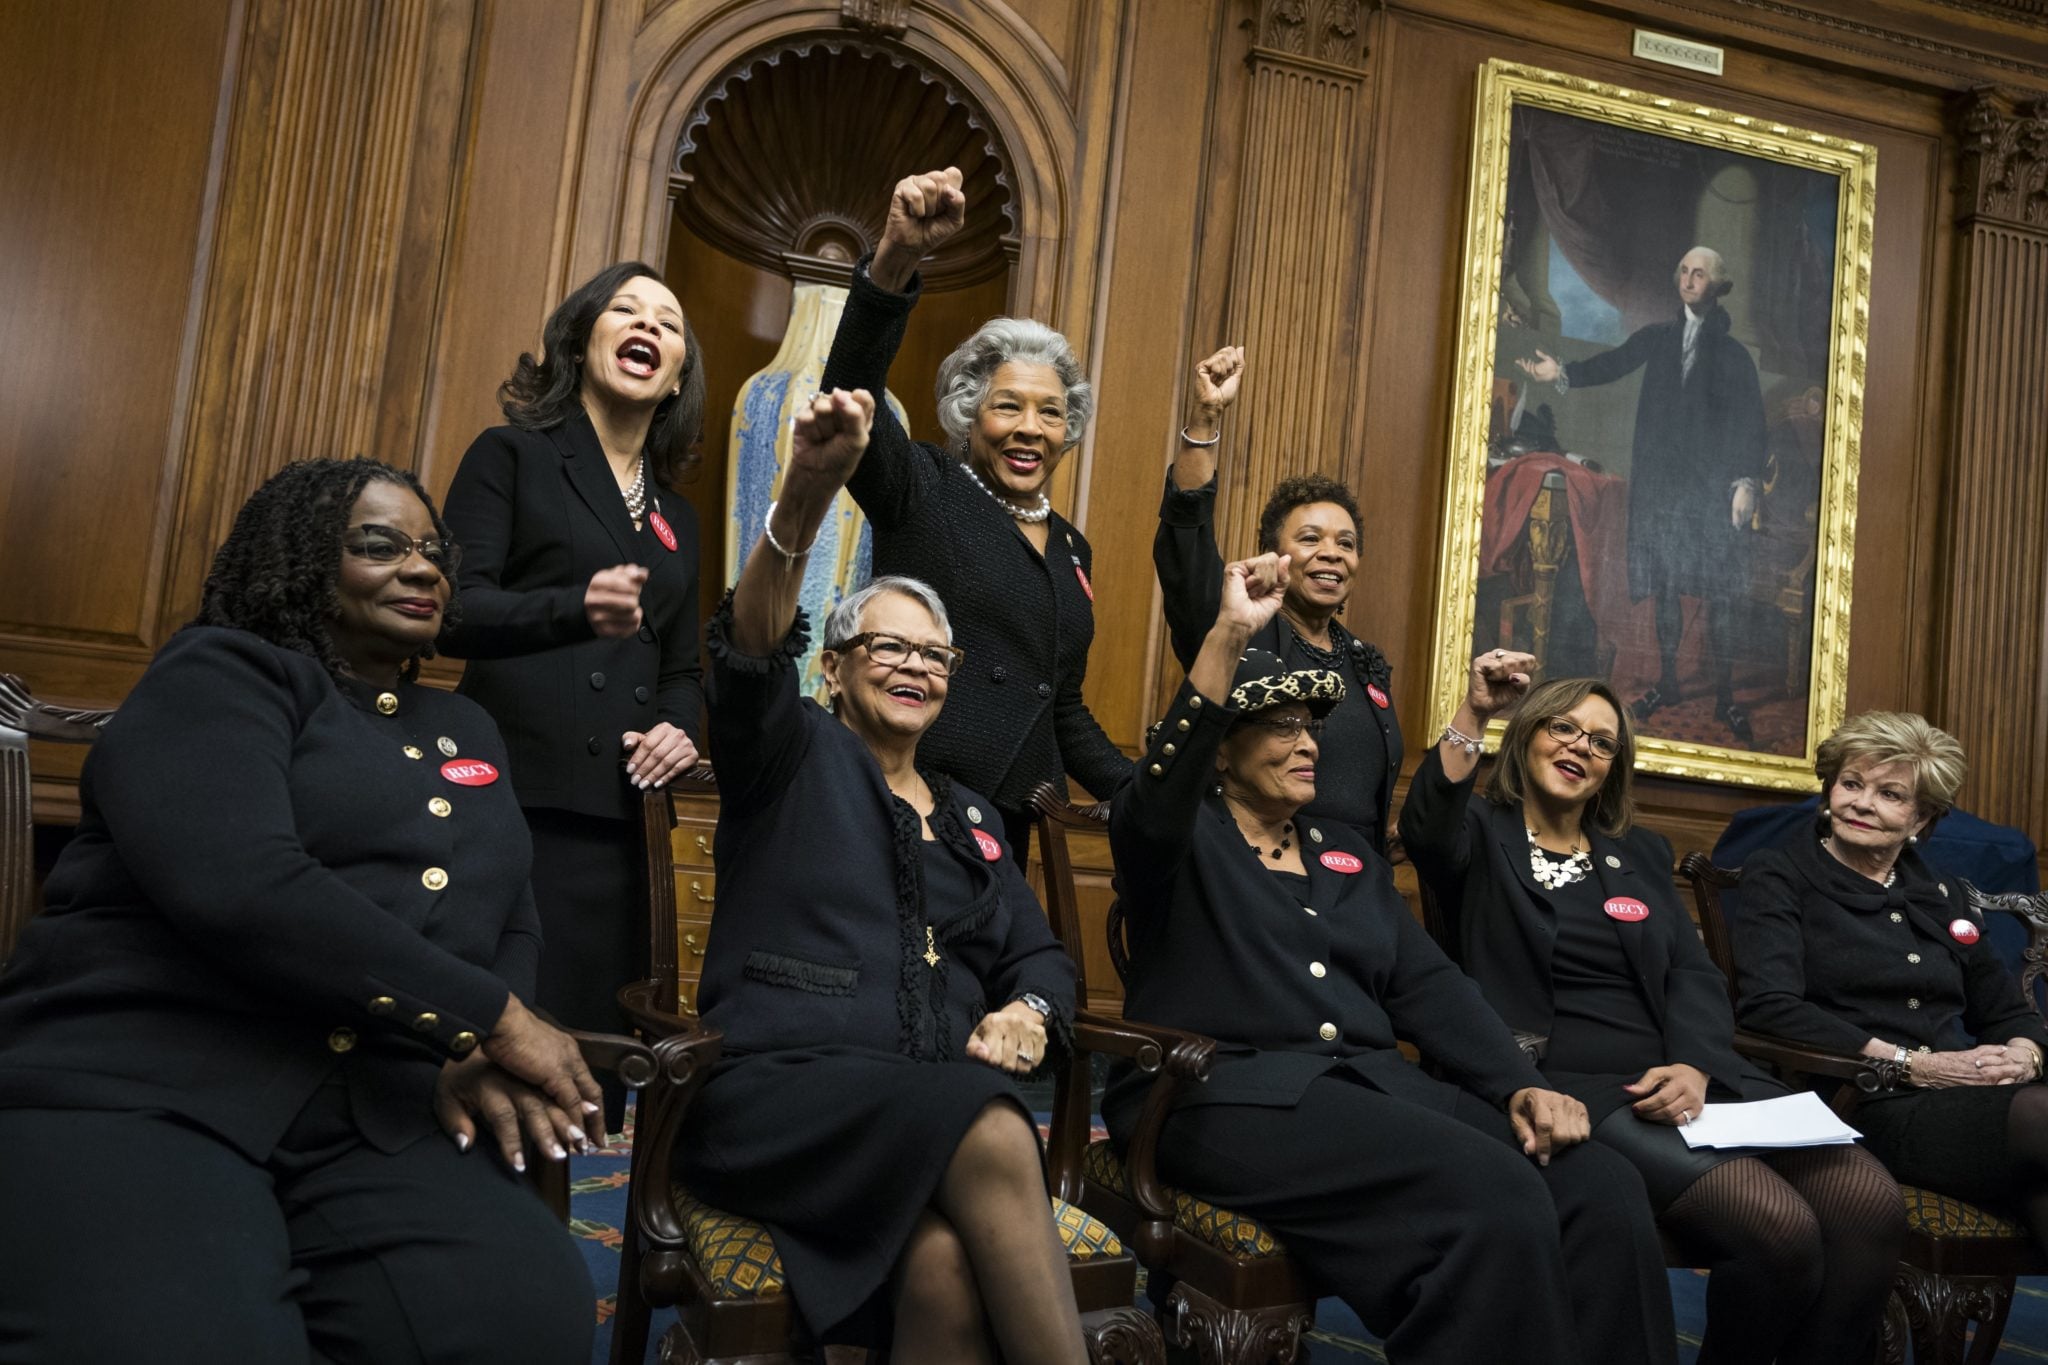 Waszyngton, USA: Demokratyczni członkowie Izby pozują do zdjęć w czarnych ubraniach. Zdjęcia przekażą prezydentowi Donaldowi Trumpowi podczas jego przemówienia w amerykańskim Kapitolu. To wszystko w ramach akcji #metoo, fot: Jim Lo Scalzo, PAP/EPA 